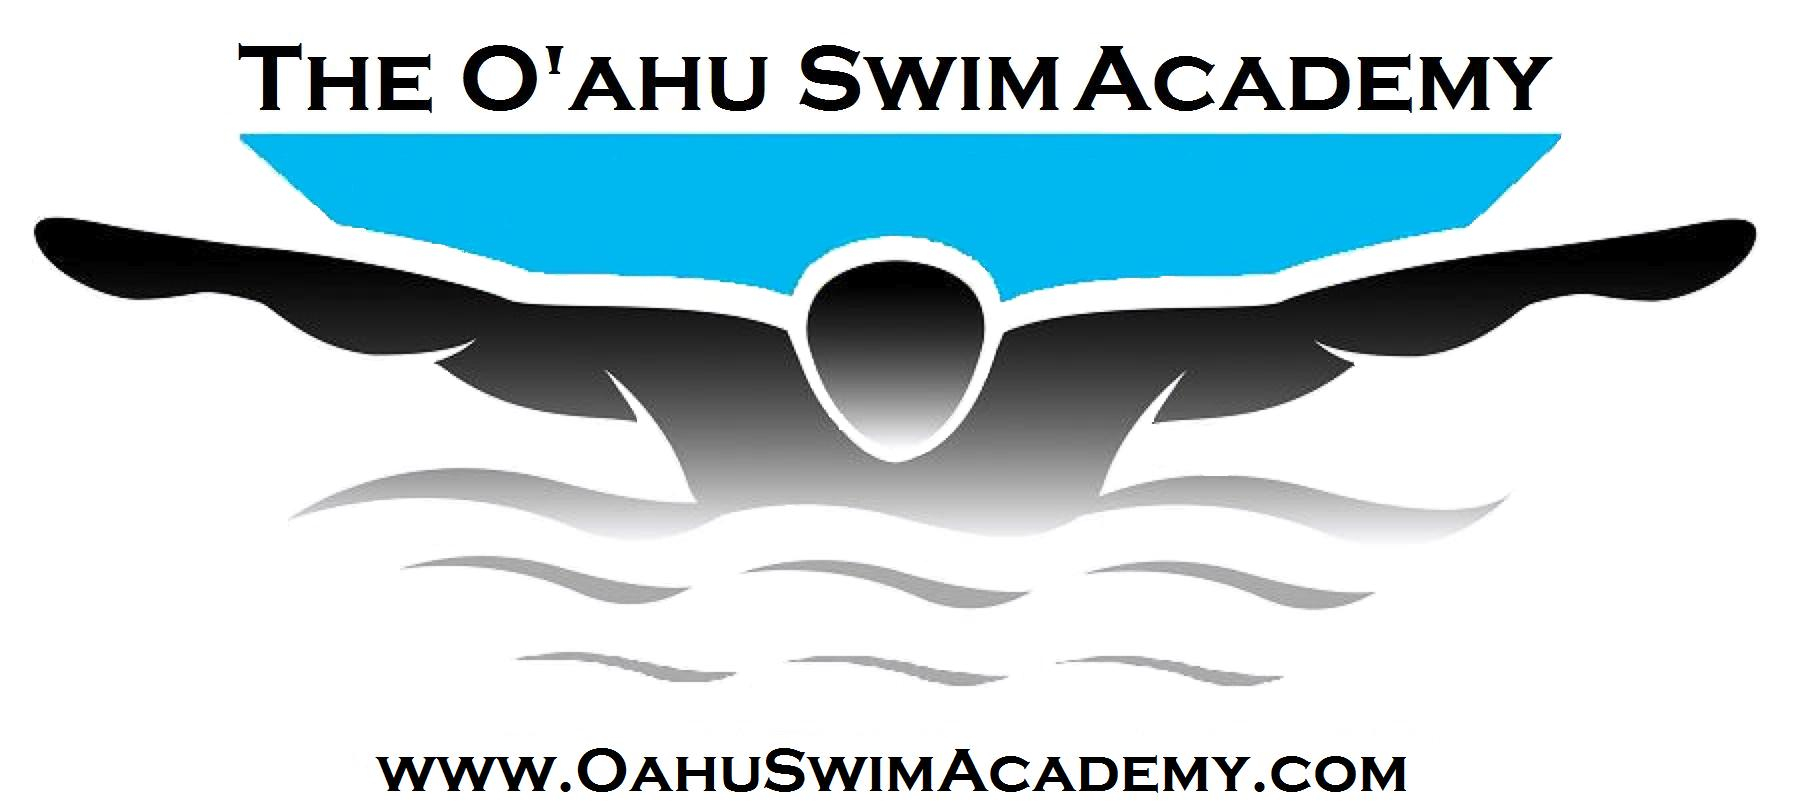 The Oahu Swim Academy